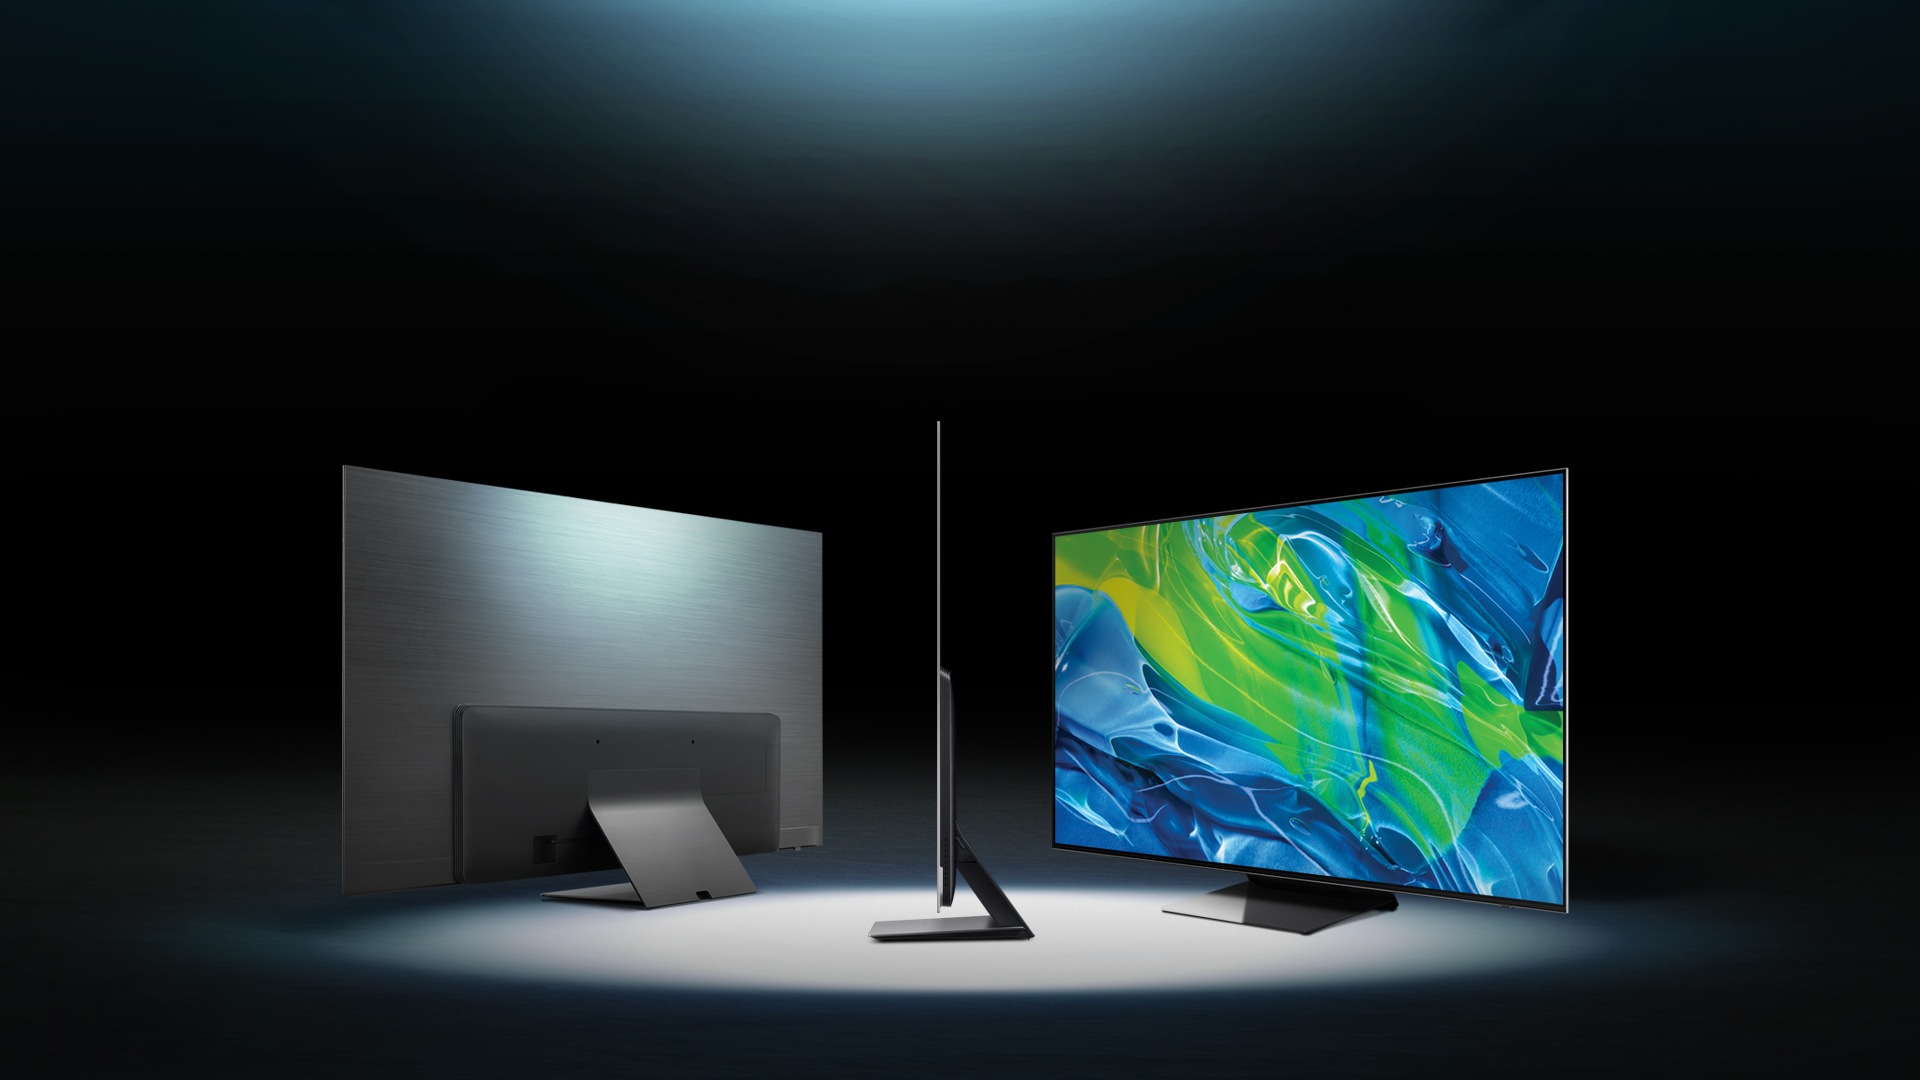 Mang đến cho bạn trải nghiệm xem phim tuyệt vời nhất, Samsung giới thiệu dòng sản phẩm TV OLED 4K mới nhất cho năm